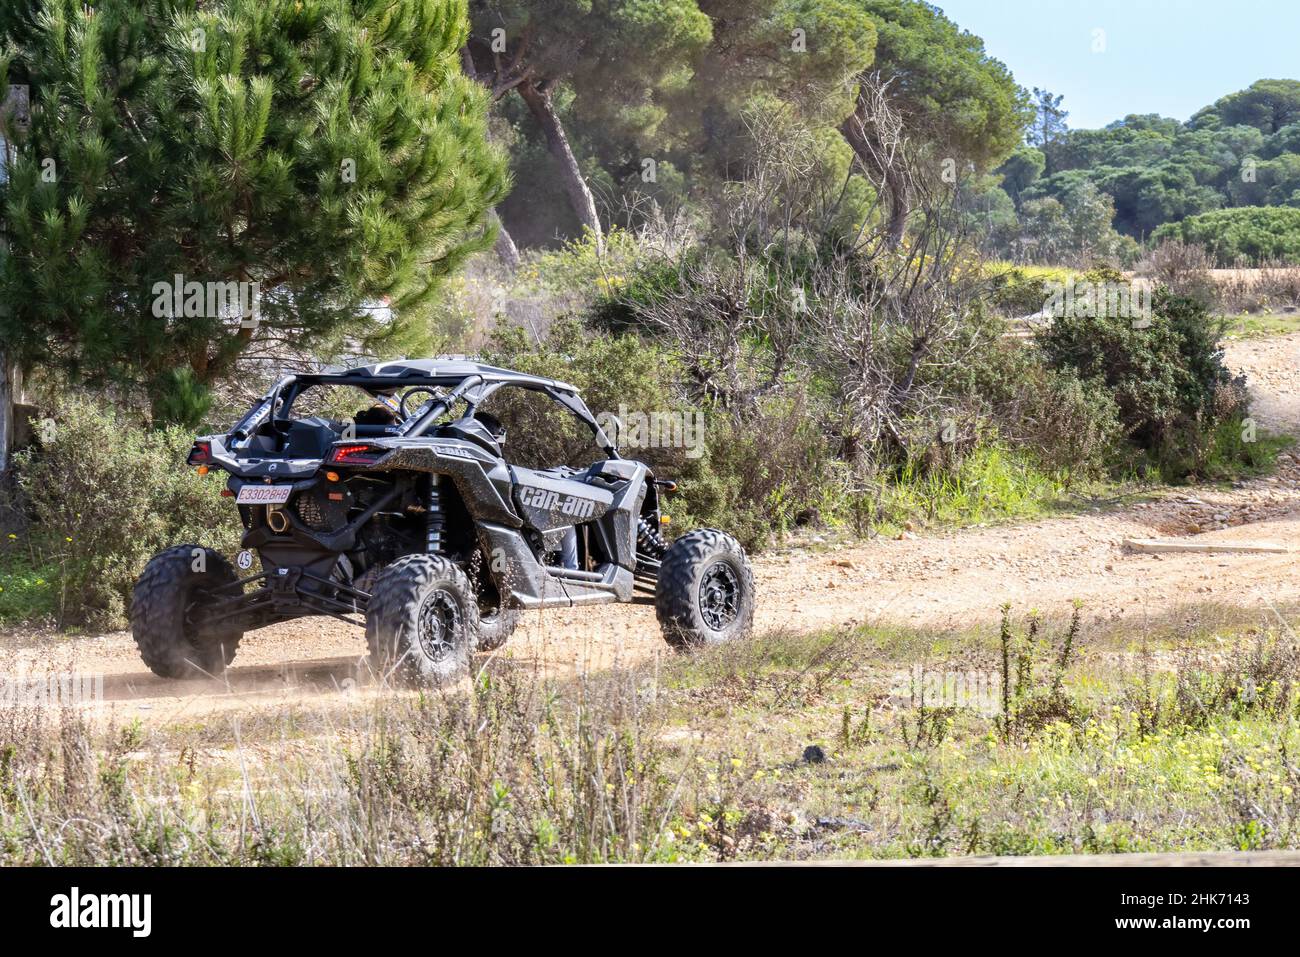 Huelva, Spagna - 29 gennaio 2022: CAN-am MAVERICK, veicolo nero per tutti i terreni che corre su un sentiero forestale Foto Stock